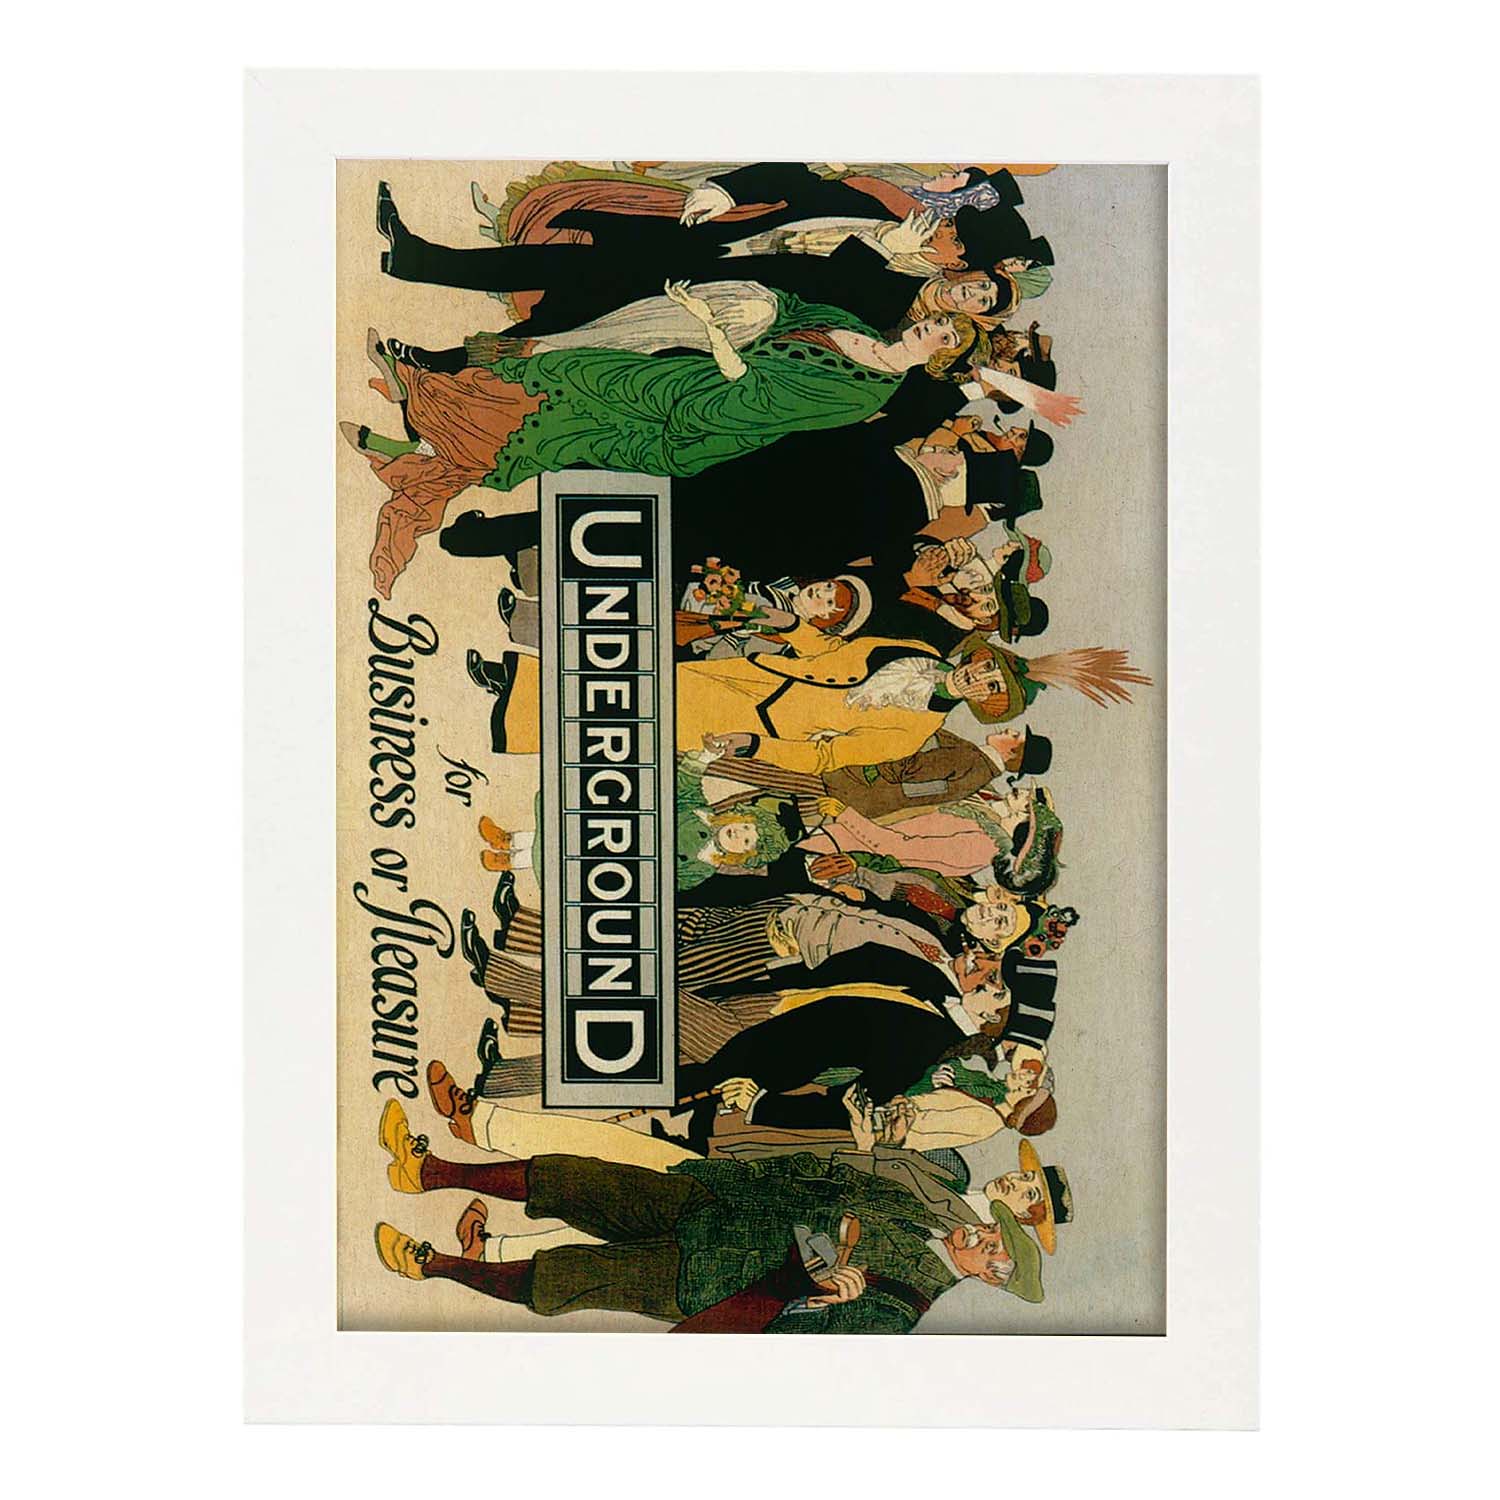 Poster vintage. Cartel vintage de Europa. Metro de Londres, 1913.-Artwork-Nacnic-A3-Marco Blanco-Nacnic Estudio SL